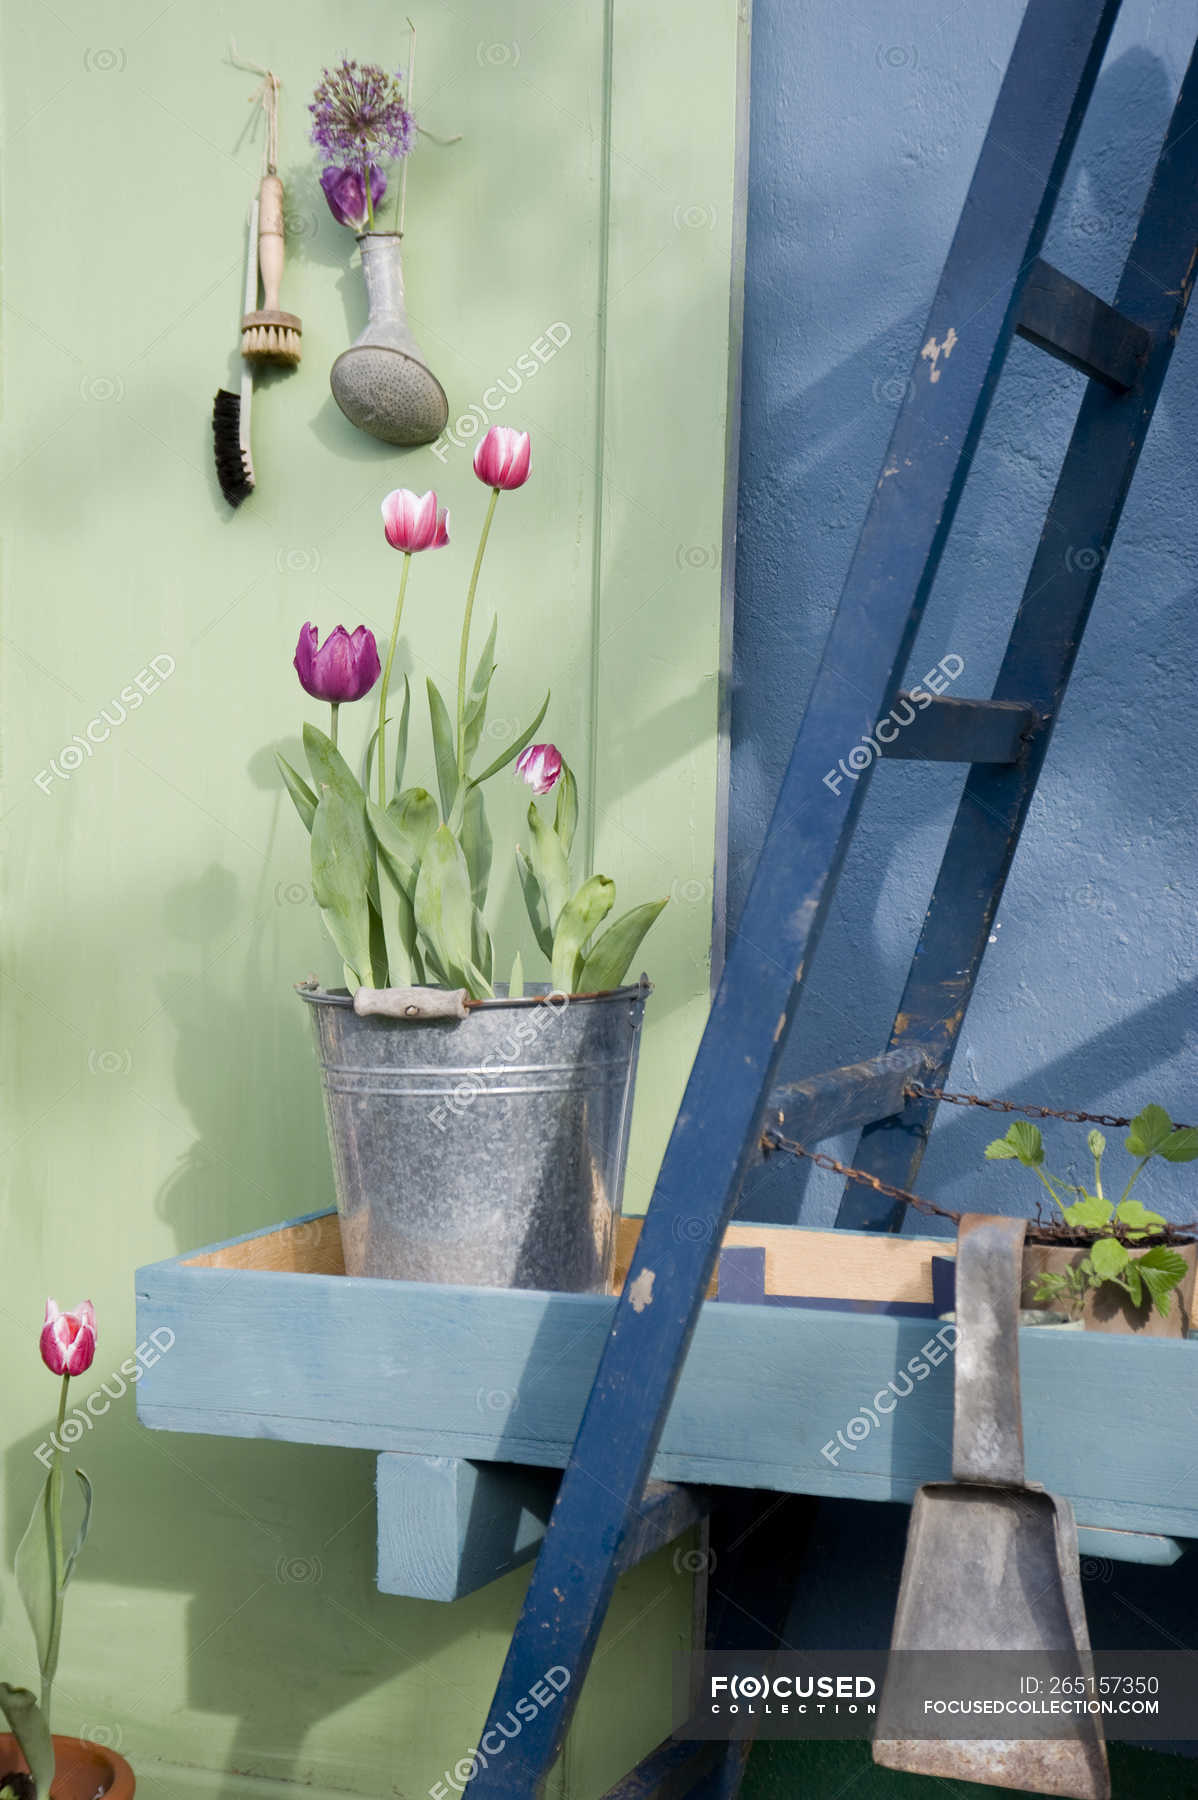 Tulipanes en maceta en cubo de metal — día, pintura - Stock Photo |  #265157350